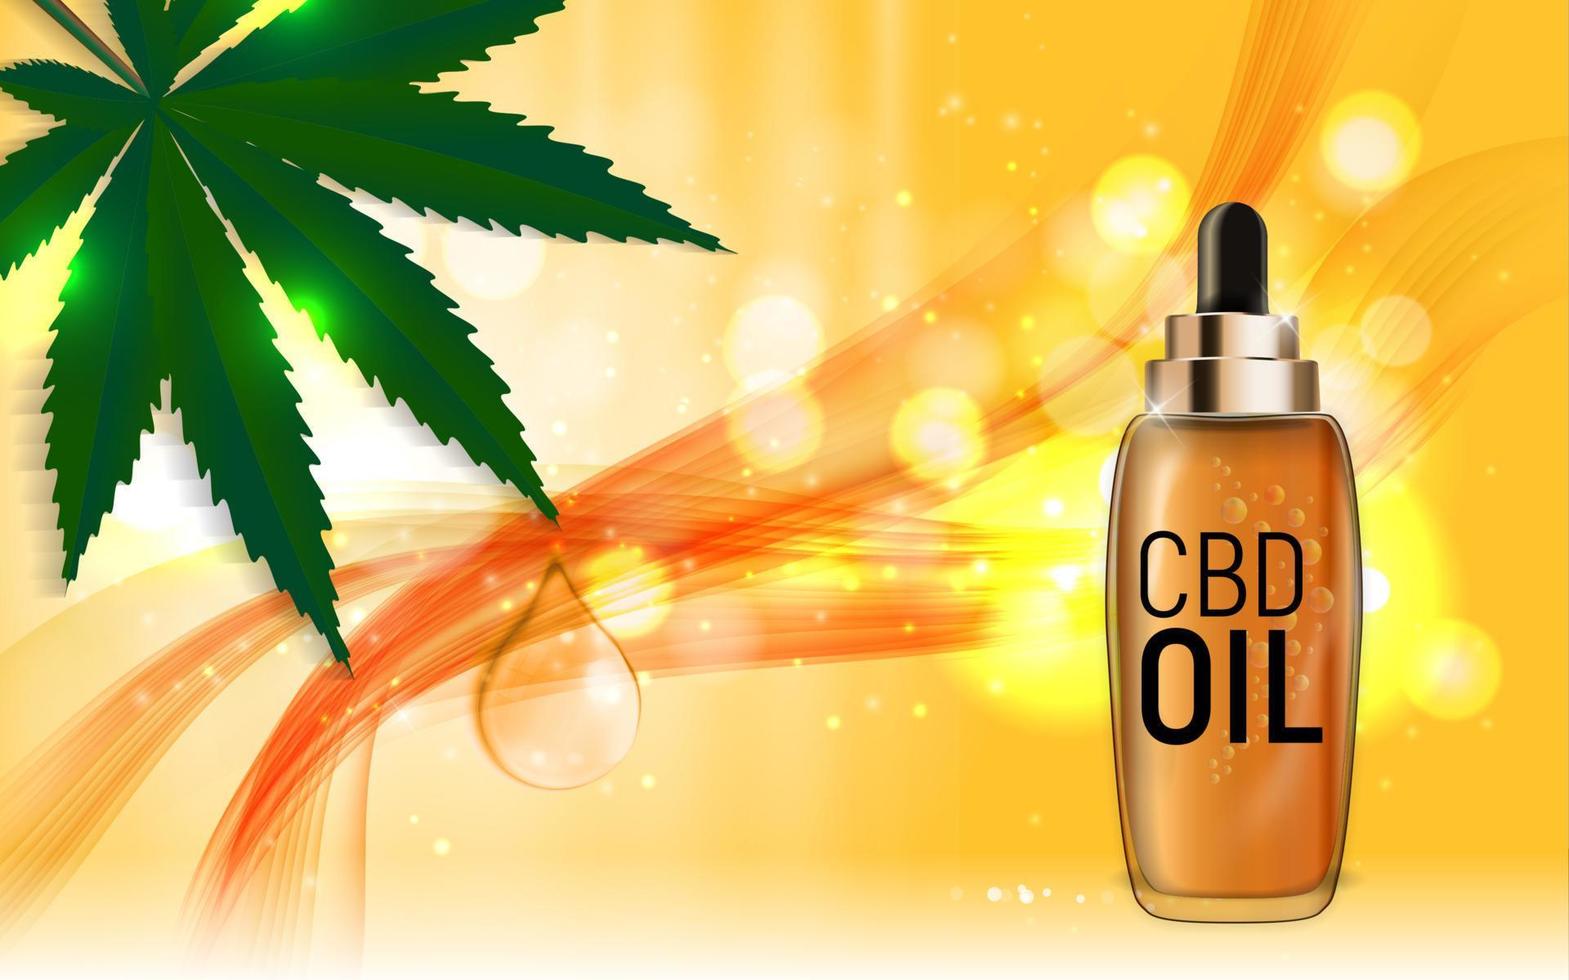 CBD-Ölprodukte, Cannabisöl für medizinische und kosmetische Zwecke. Vektorillustration vektor